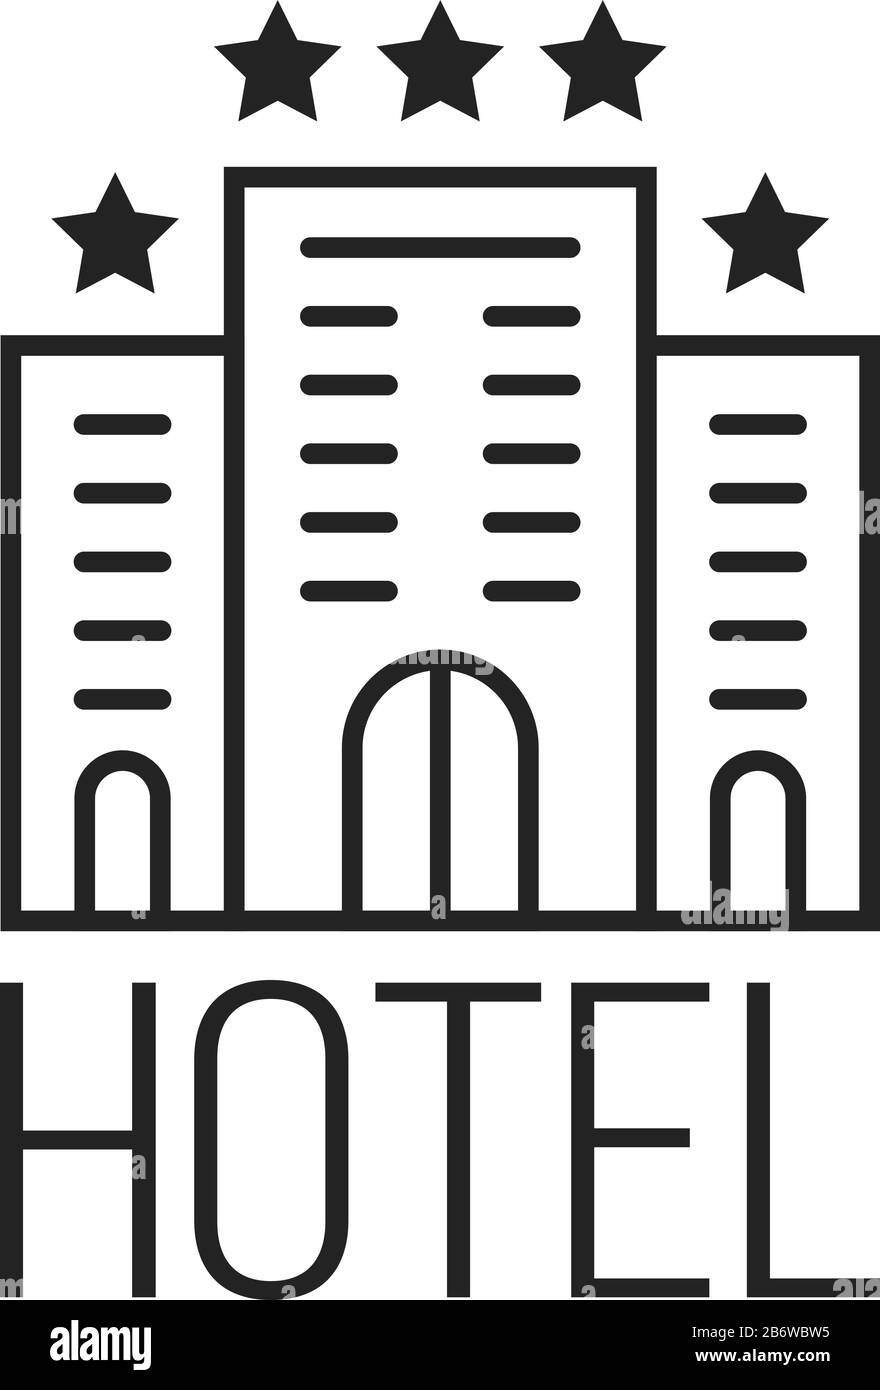 lineare semplice icona di hotel di lusso con stelle Illustrazione Vettoriale